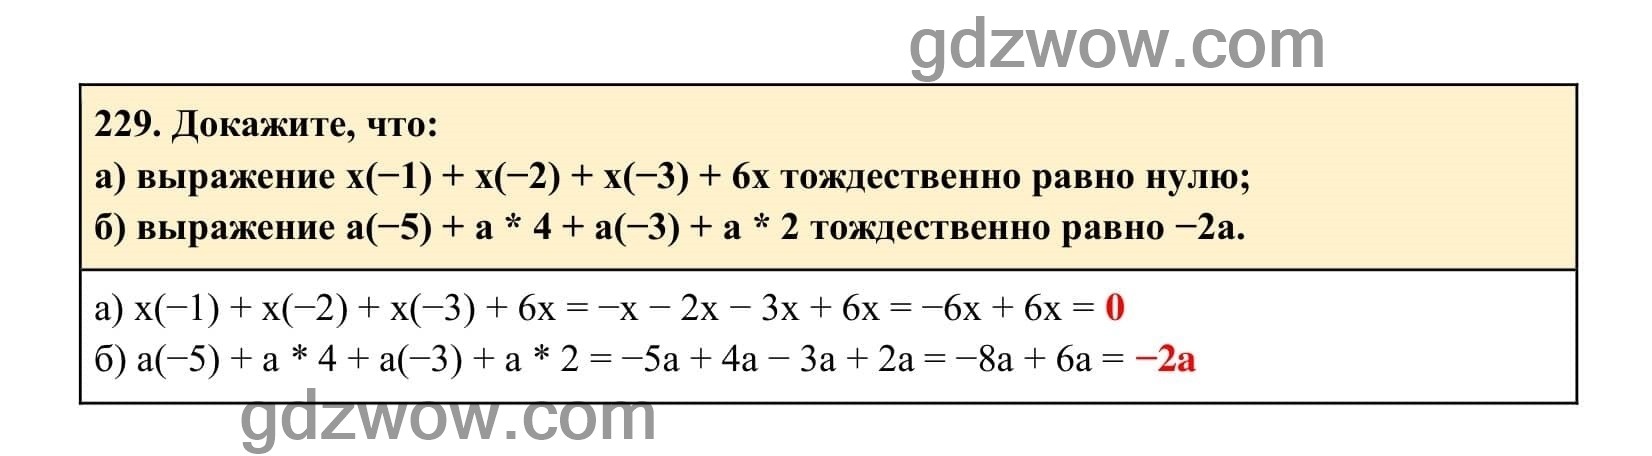 Упражнение 229 - ГДЗ по Алгебре 7 класс Учебник Макарычев (решебник) - GDZwow